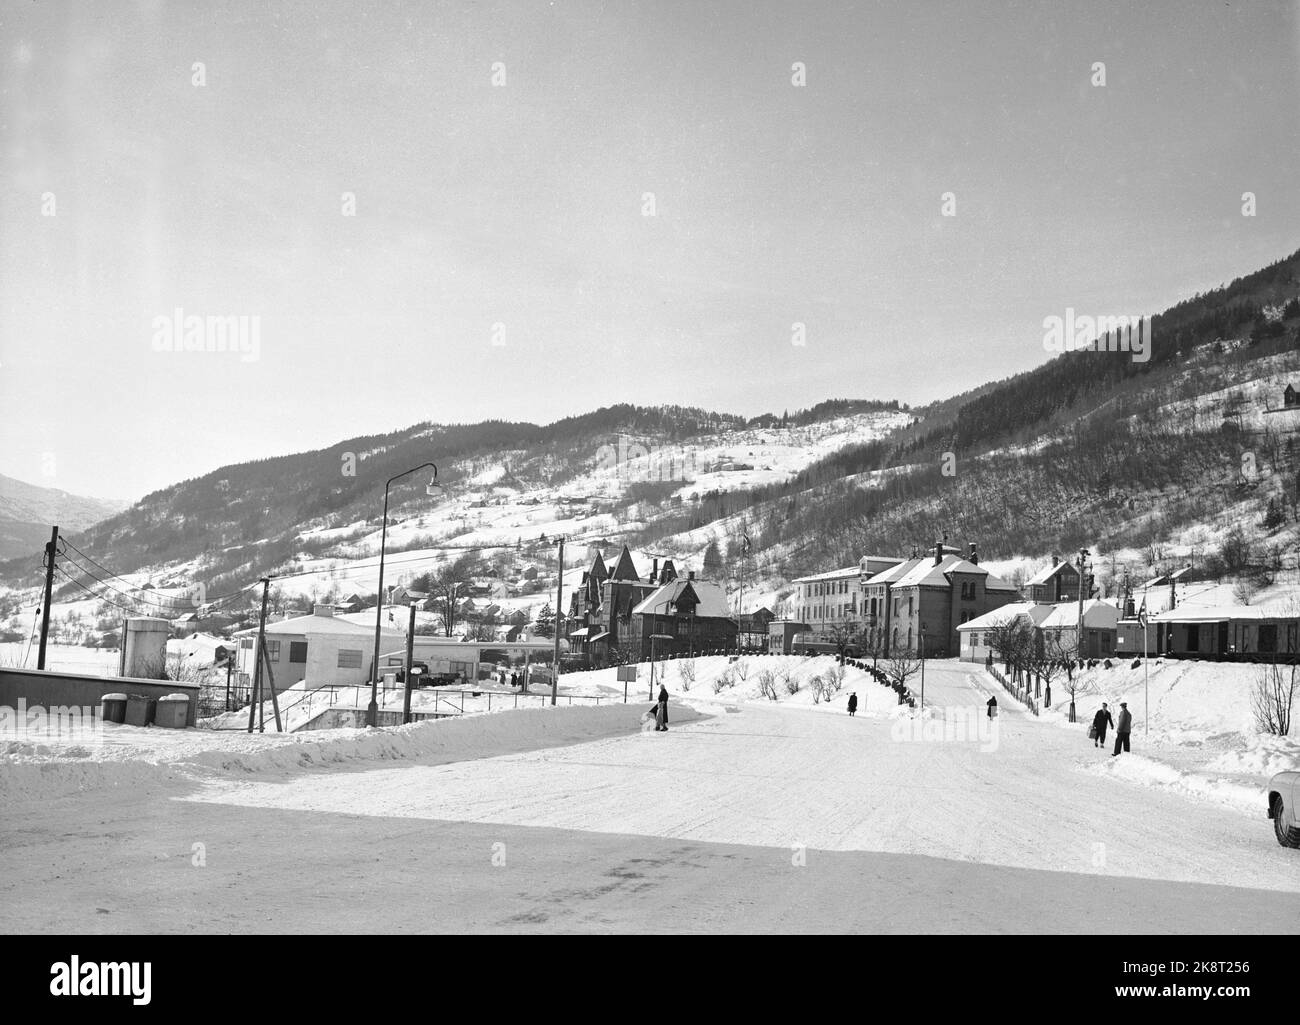 Voss 19550212. Voss, municipio masculino del condado de Hordaland. Aquí verá la estación de tren a la derecha en la imagen. Foto: Jan Stage Foto de stock